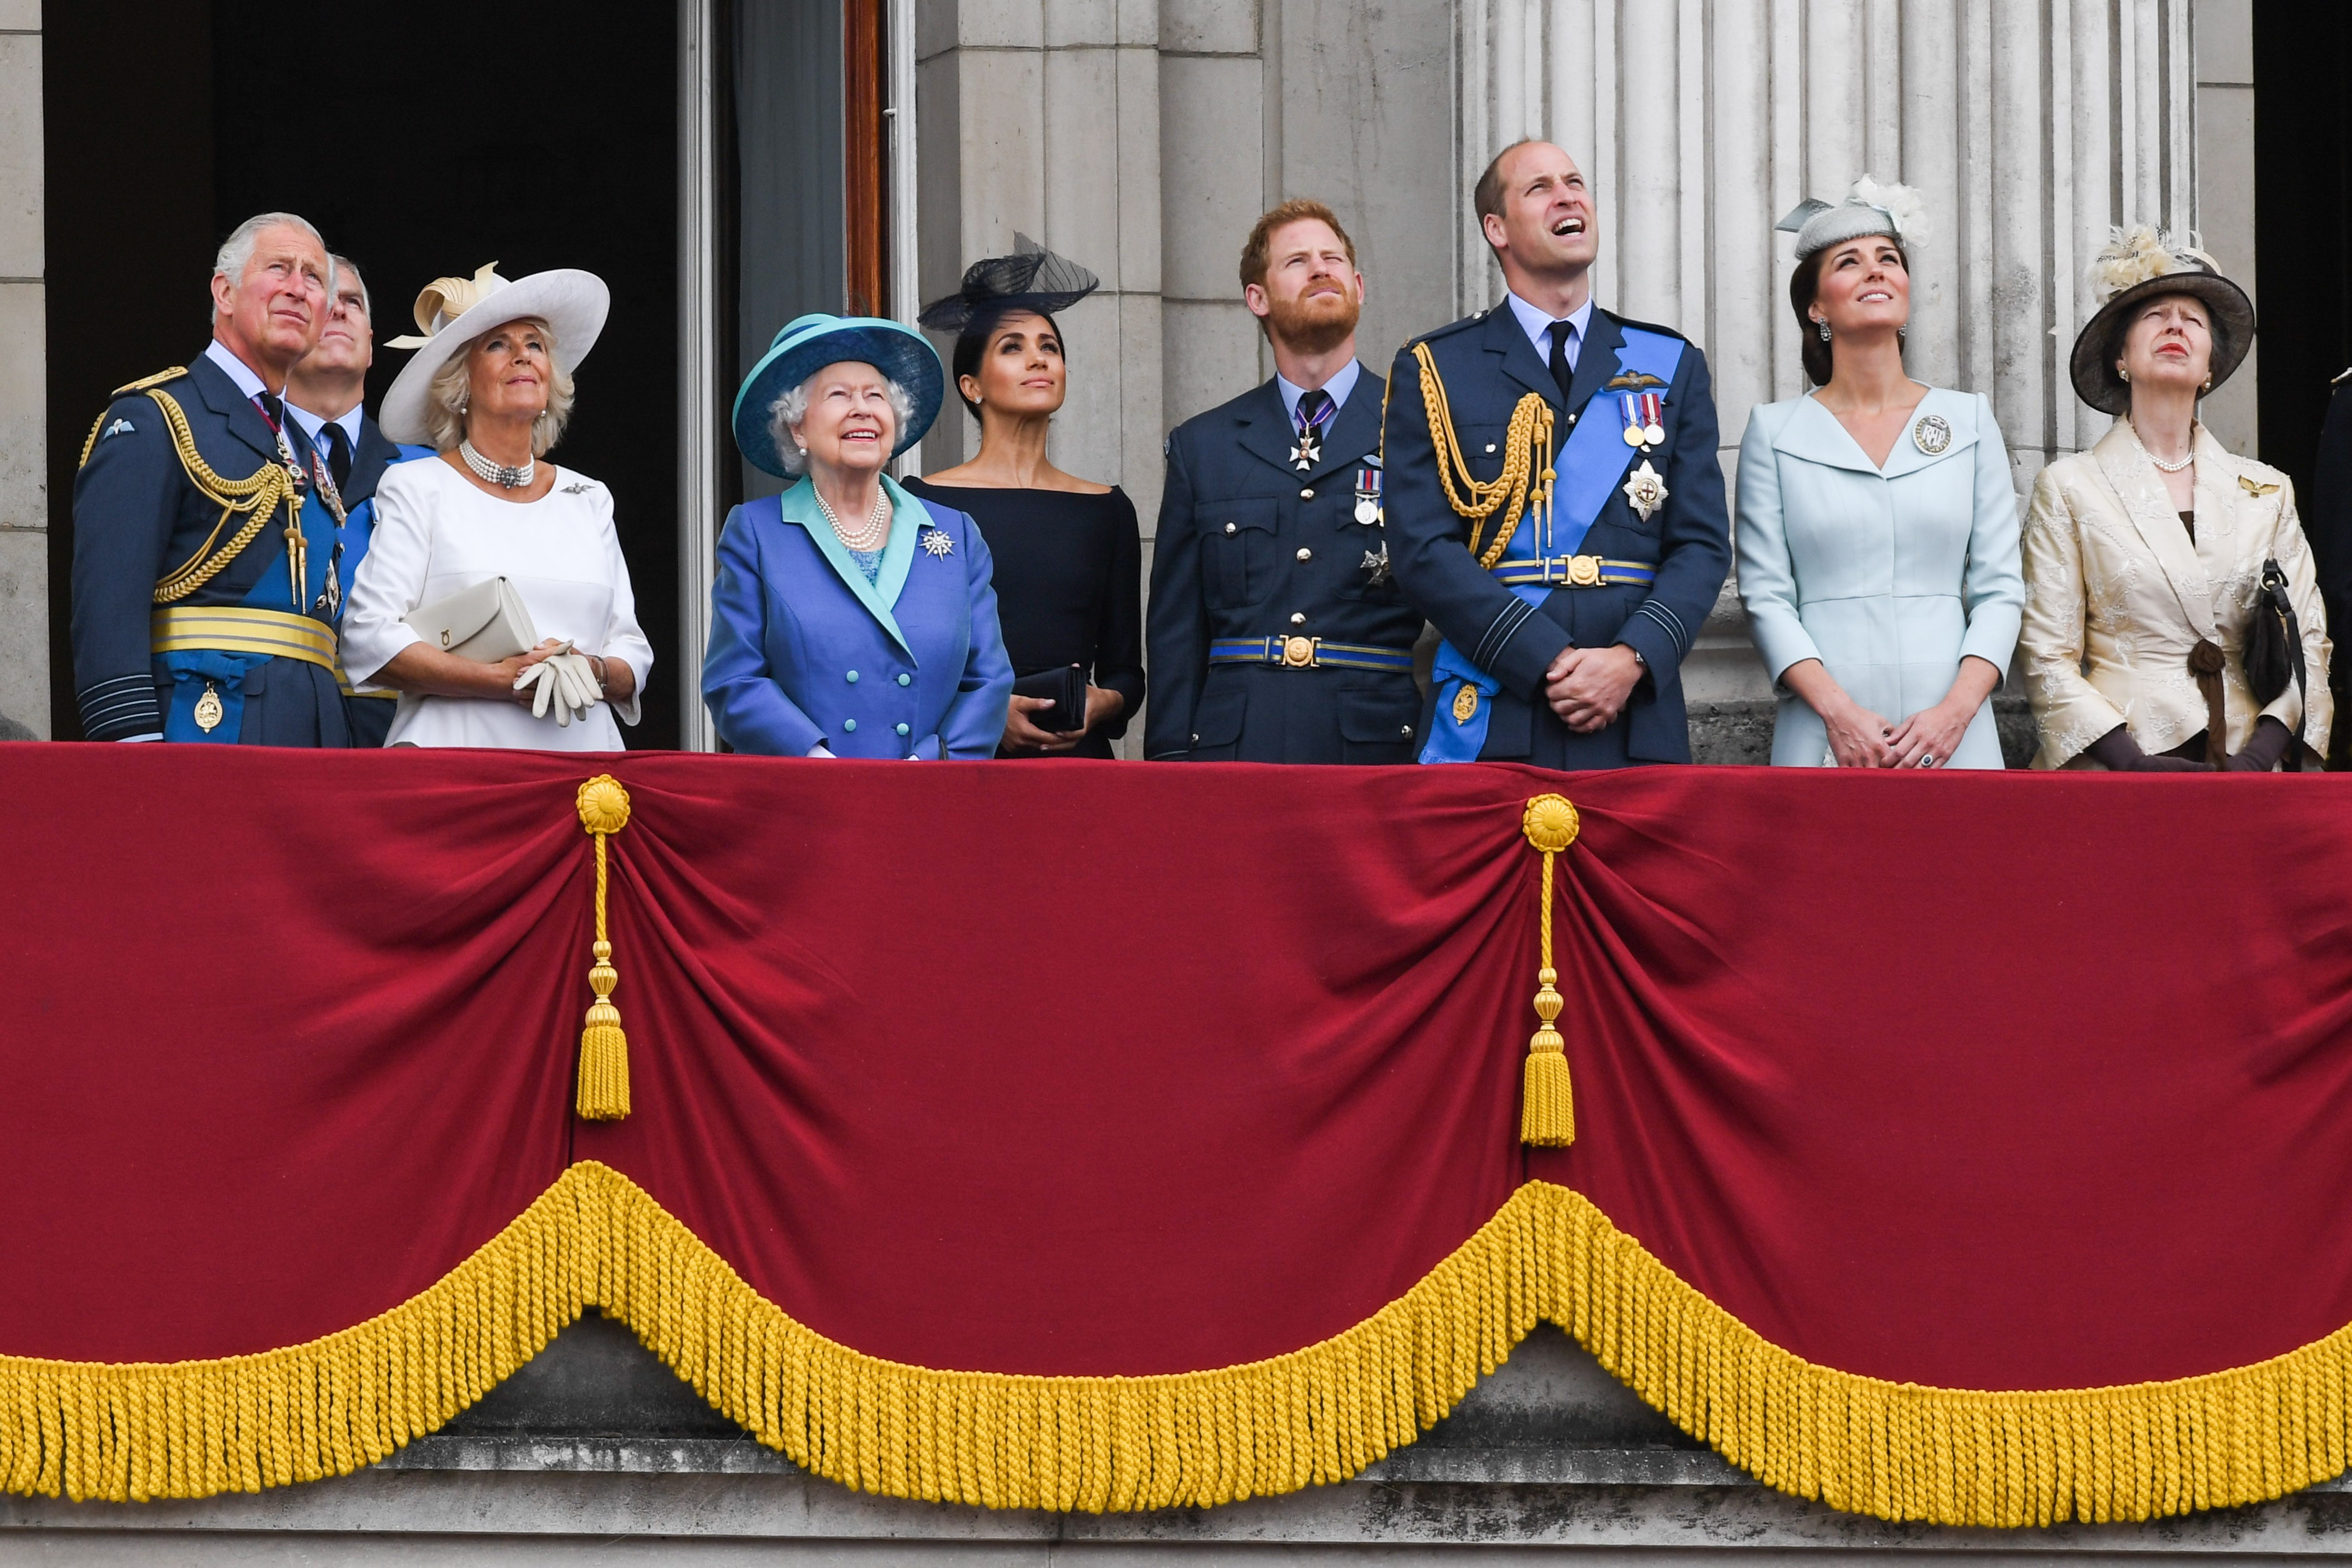 A rainha Elizabeth II na companhia do príncipe Charles, do príncipe William, da duquesa Kate Middleton, do príncipe Harry e da duquesa Meghan Markle e de outros membros da família real britânica em um evento da realeza (Foto: Getty Images)